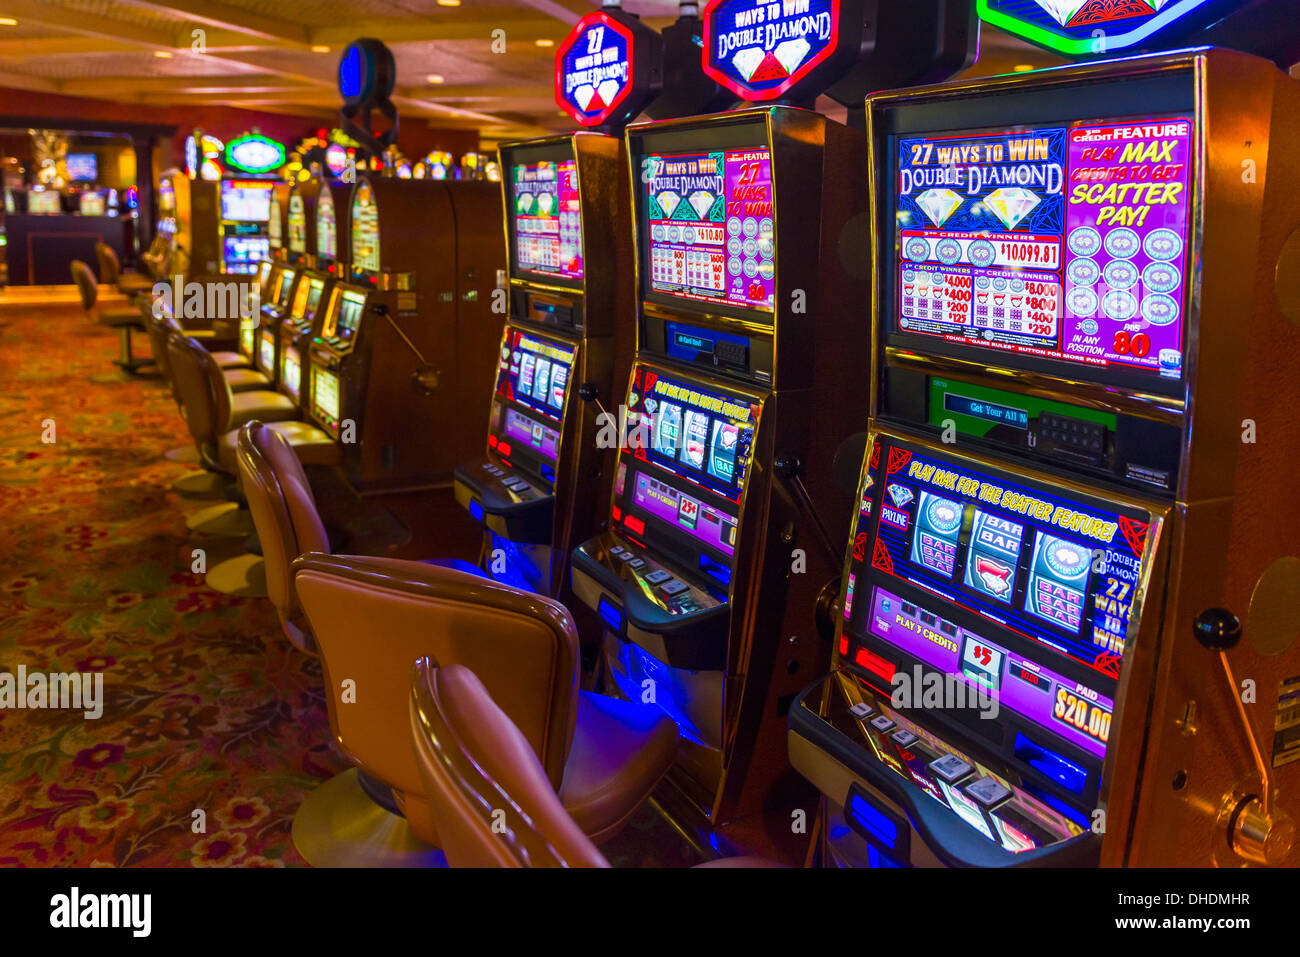 Treasure Island Casino and Resort, Las Vegas, Nevada, États-Unis d'Amérique, Amérique du Nord Banque D'Images